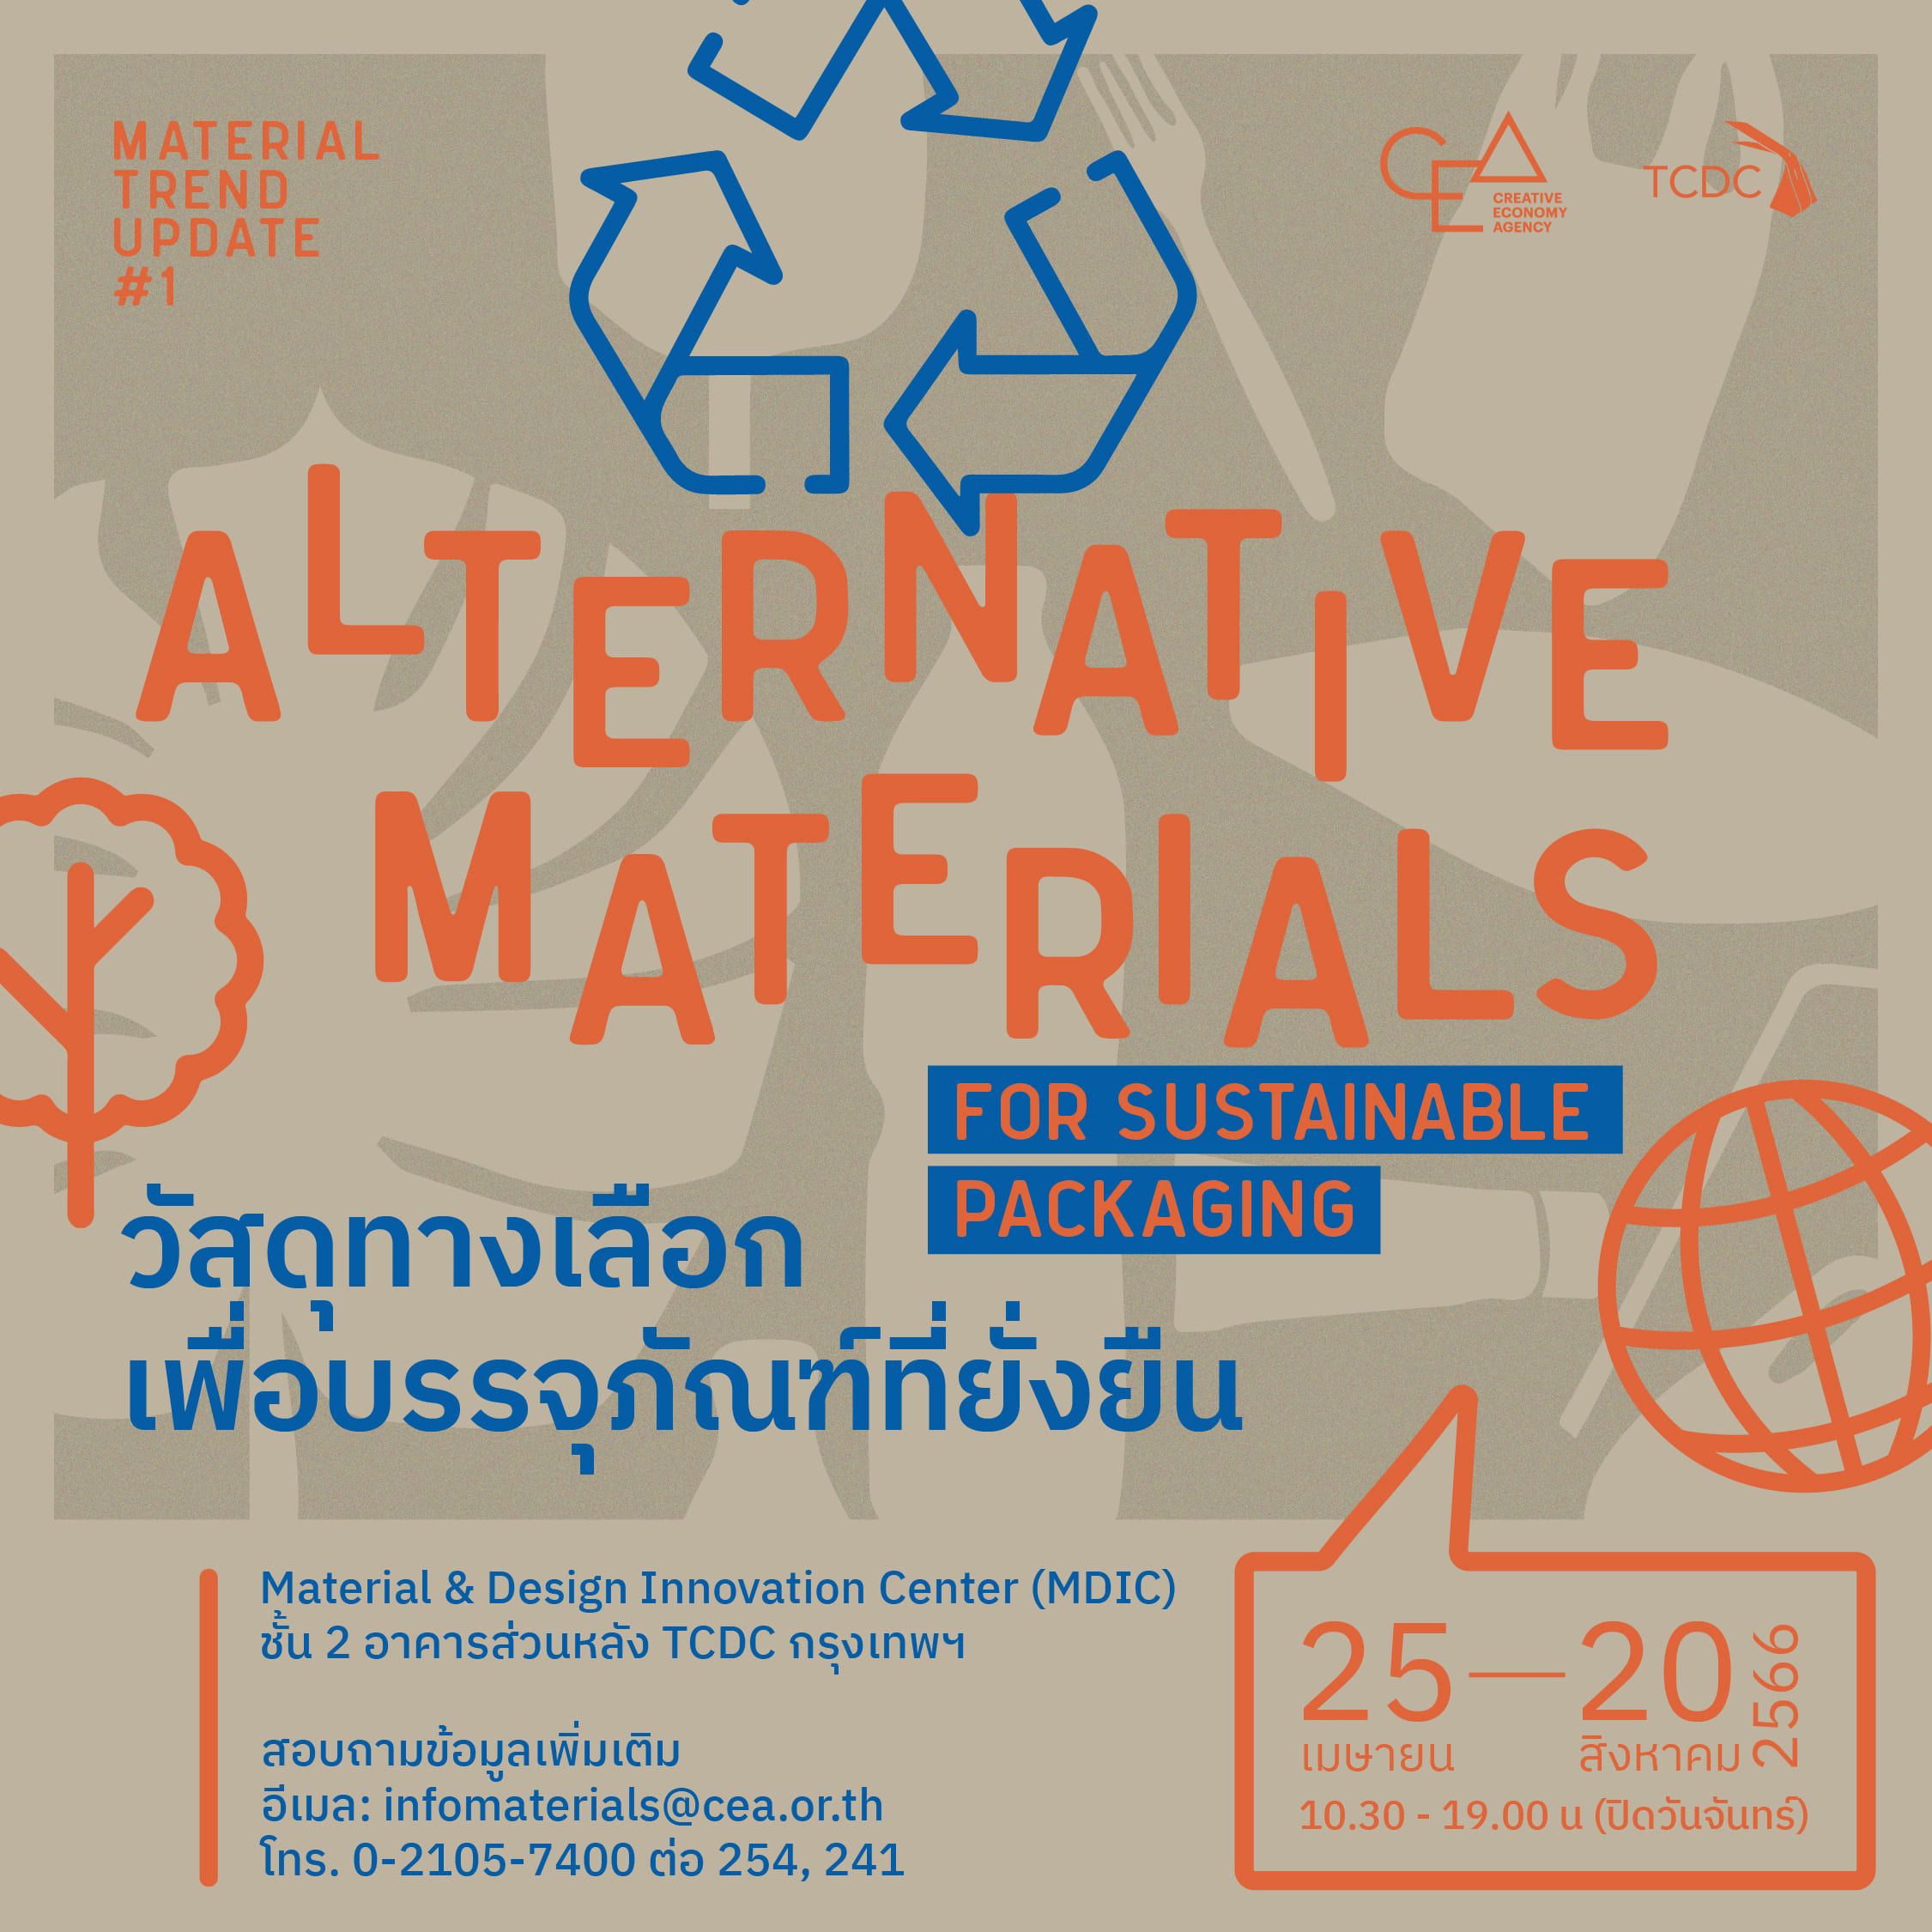 การจัดแสดงวัสดุ Altermative Materials For Sustainable Packaging